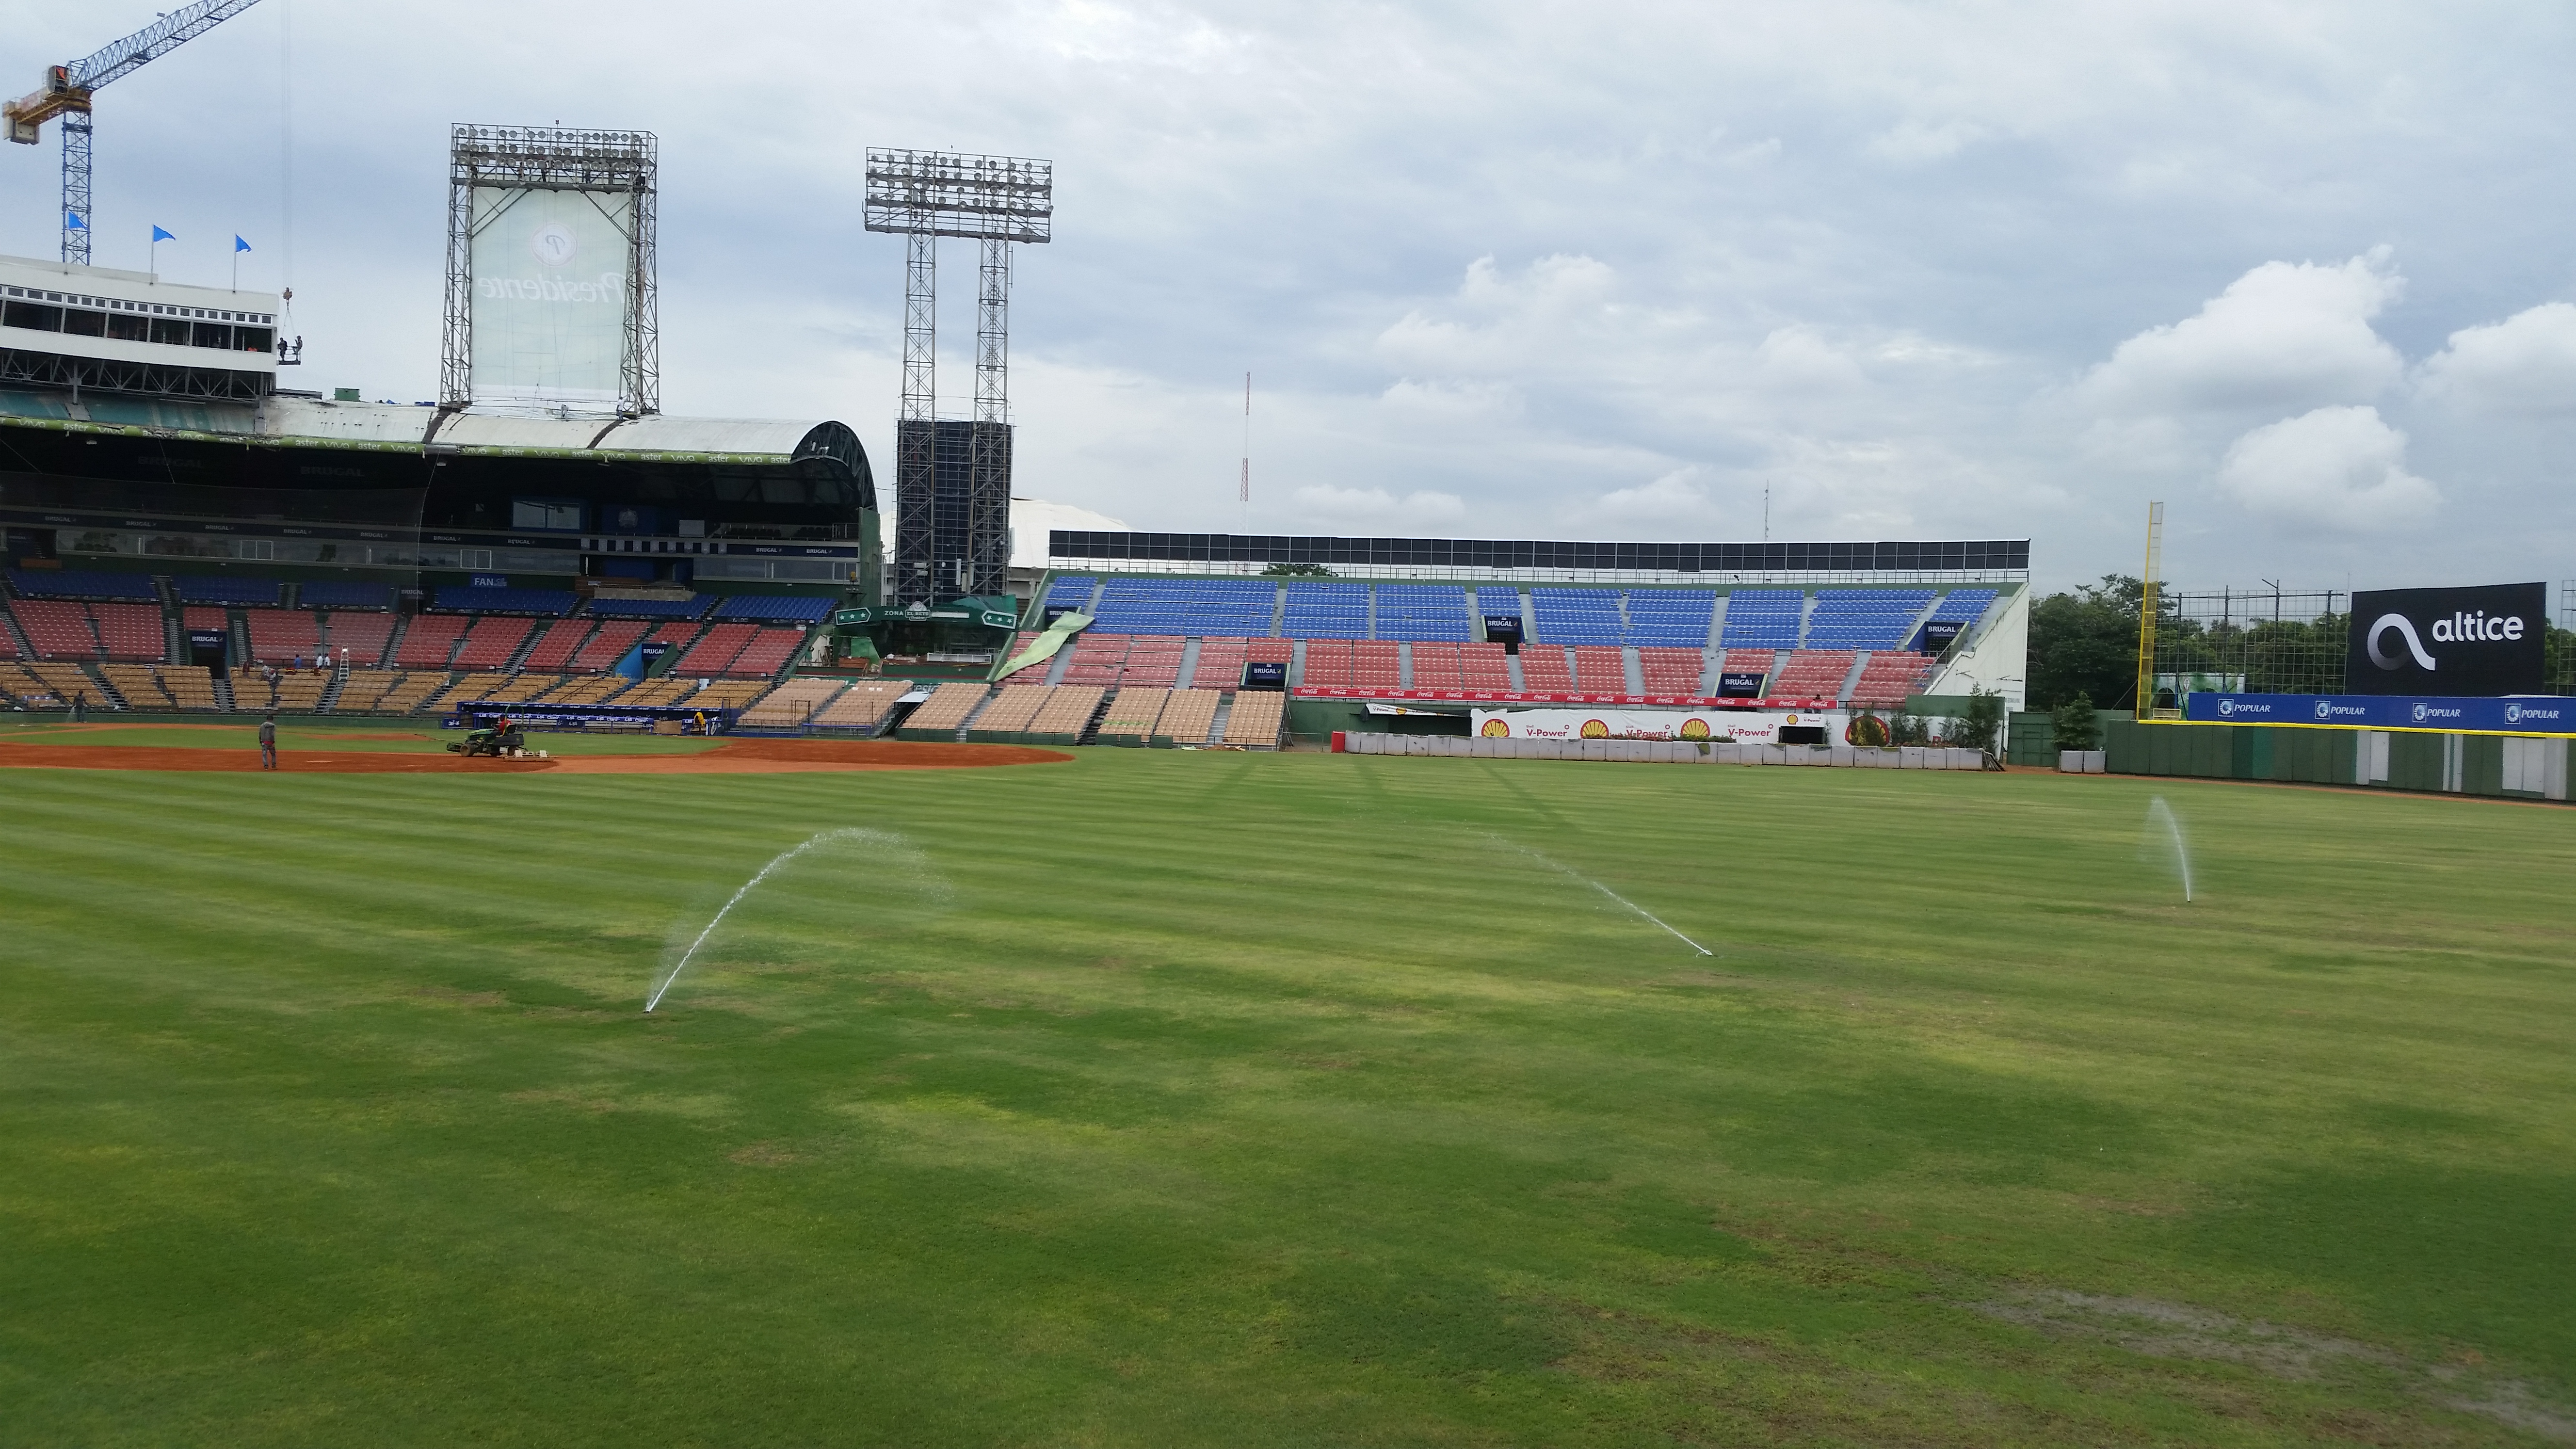 Realizan trabajos en el Estadio Quisqueya Juan Marichal con miras al inicio del torneo de béisbol invernal 2018-2019